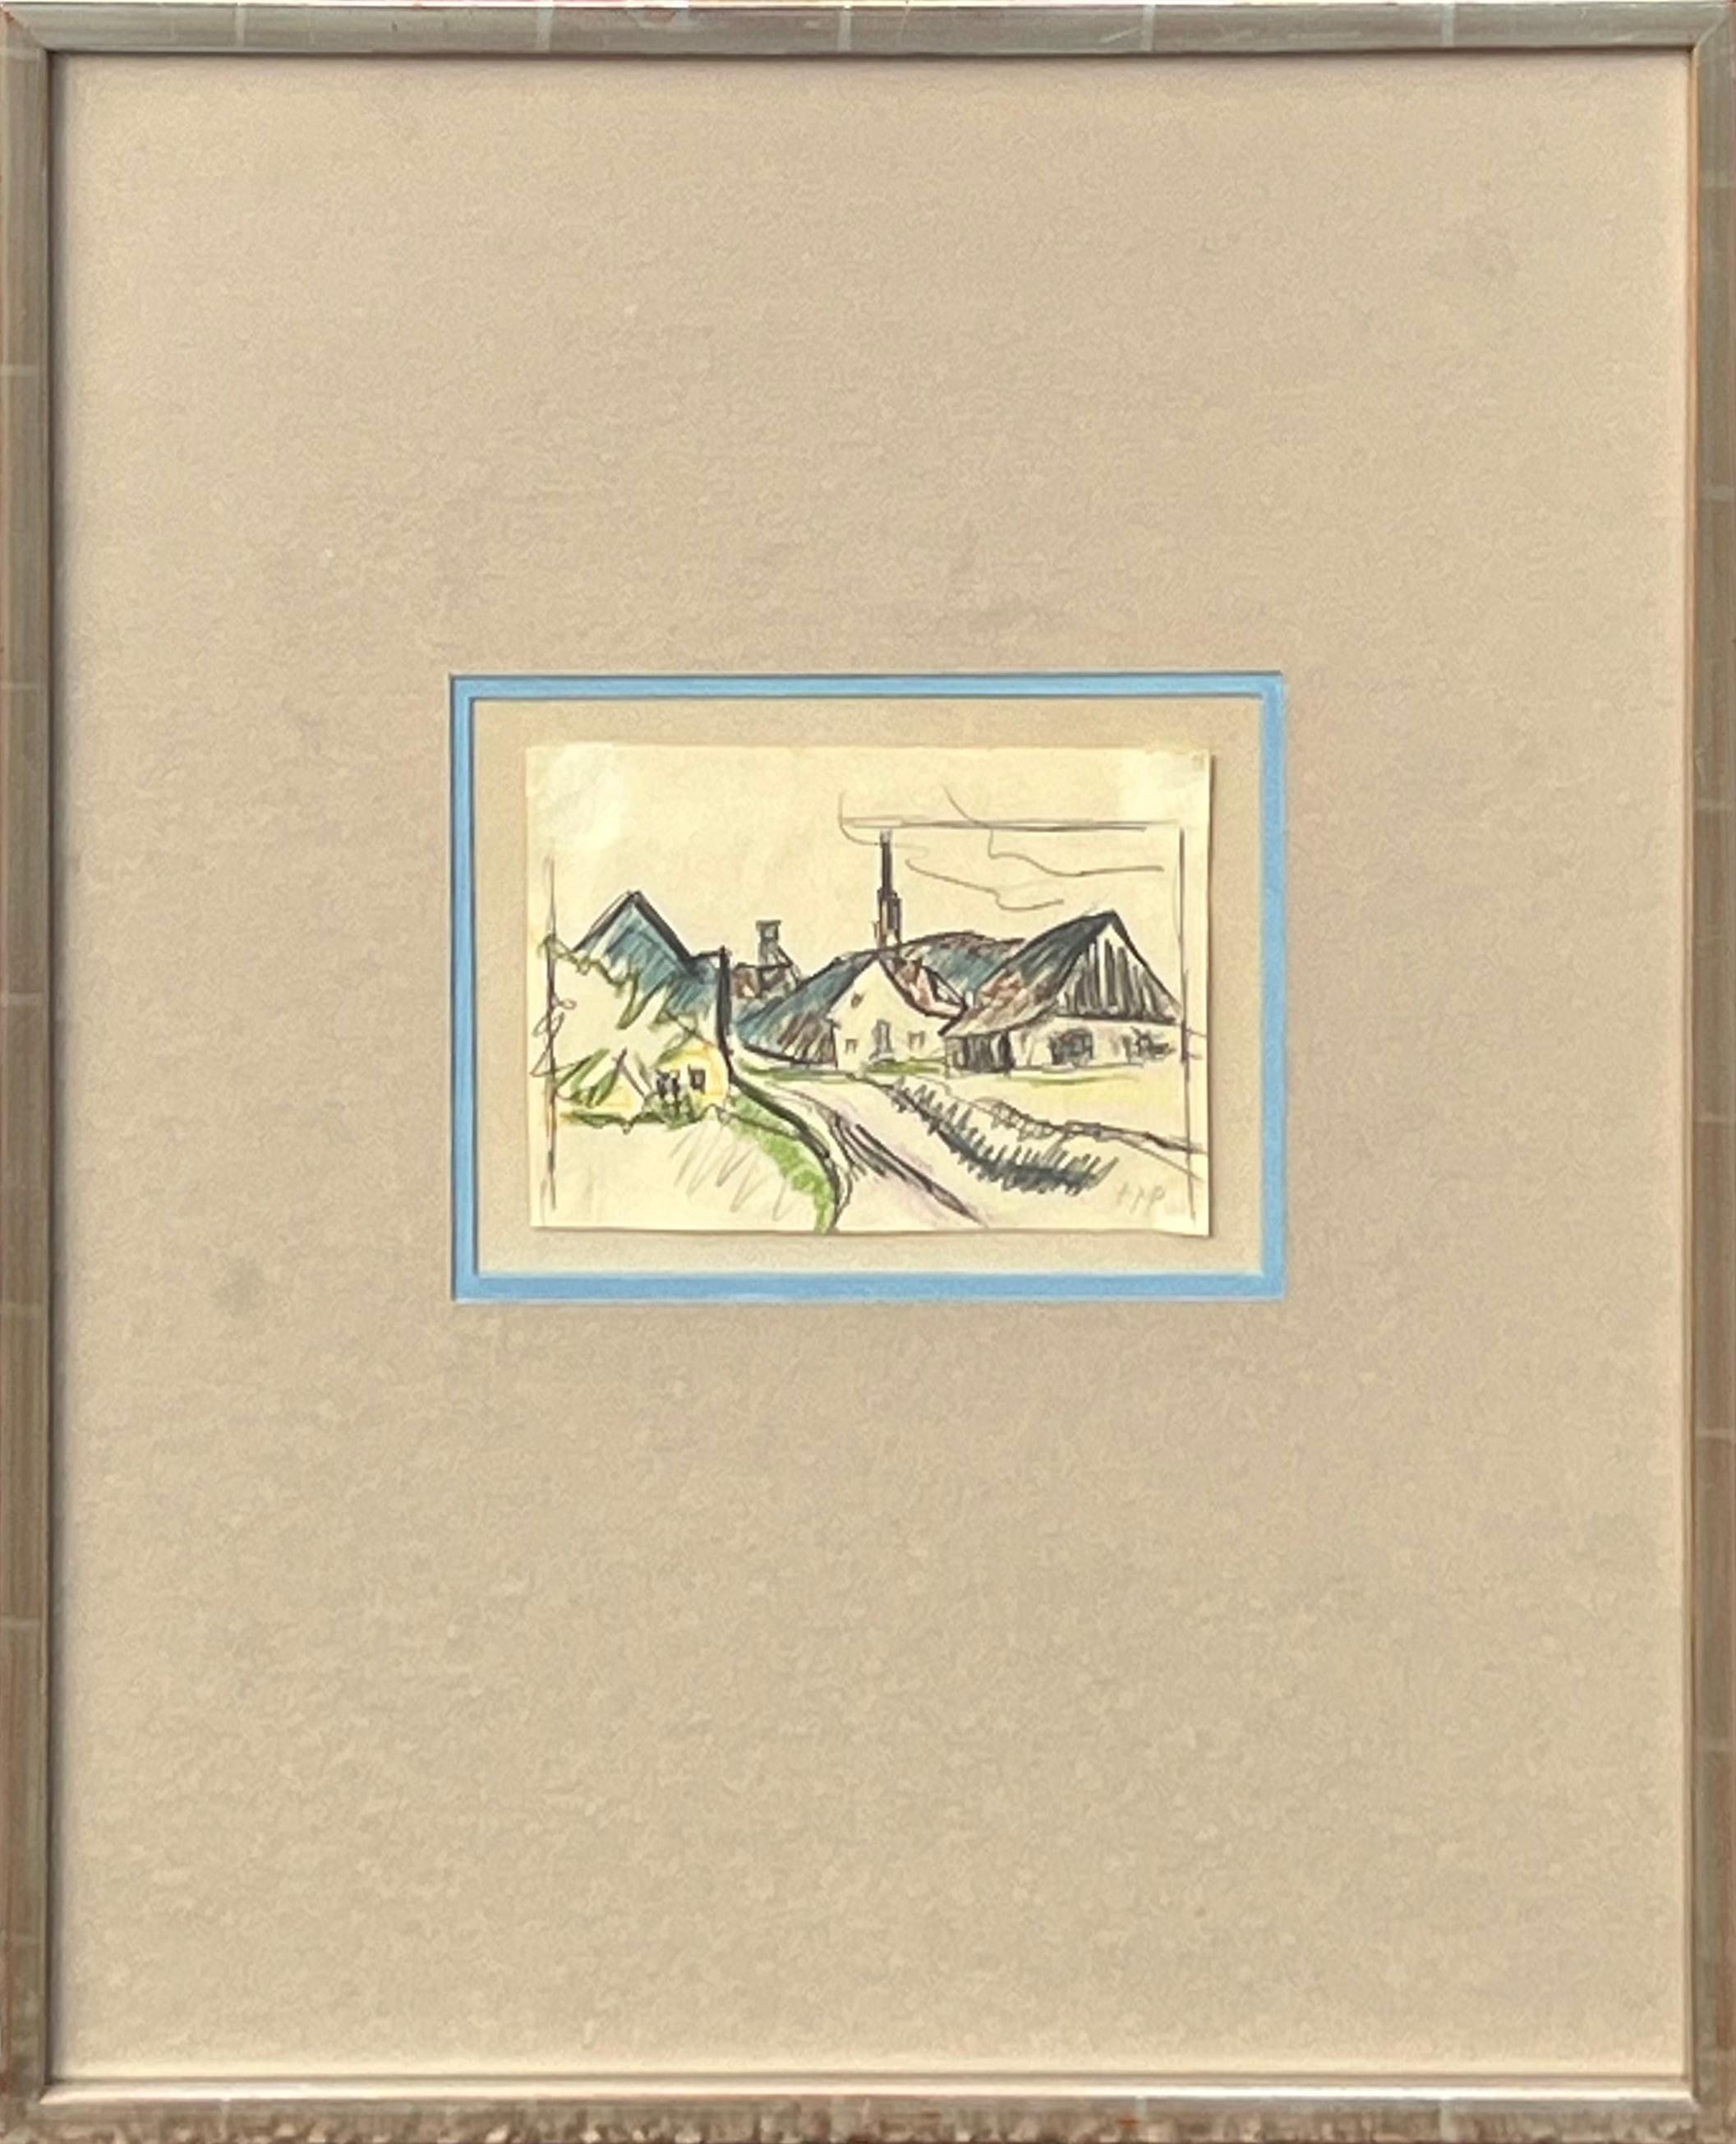 Herman Max Pechstein Landscape Art – „View of Village“ Frühe moderne gestische abstrakte Landschaftszeichnung von Häusern 